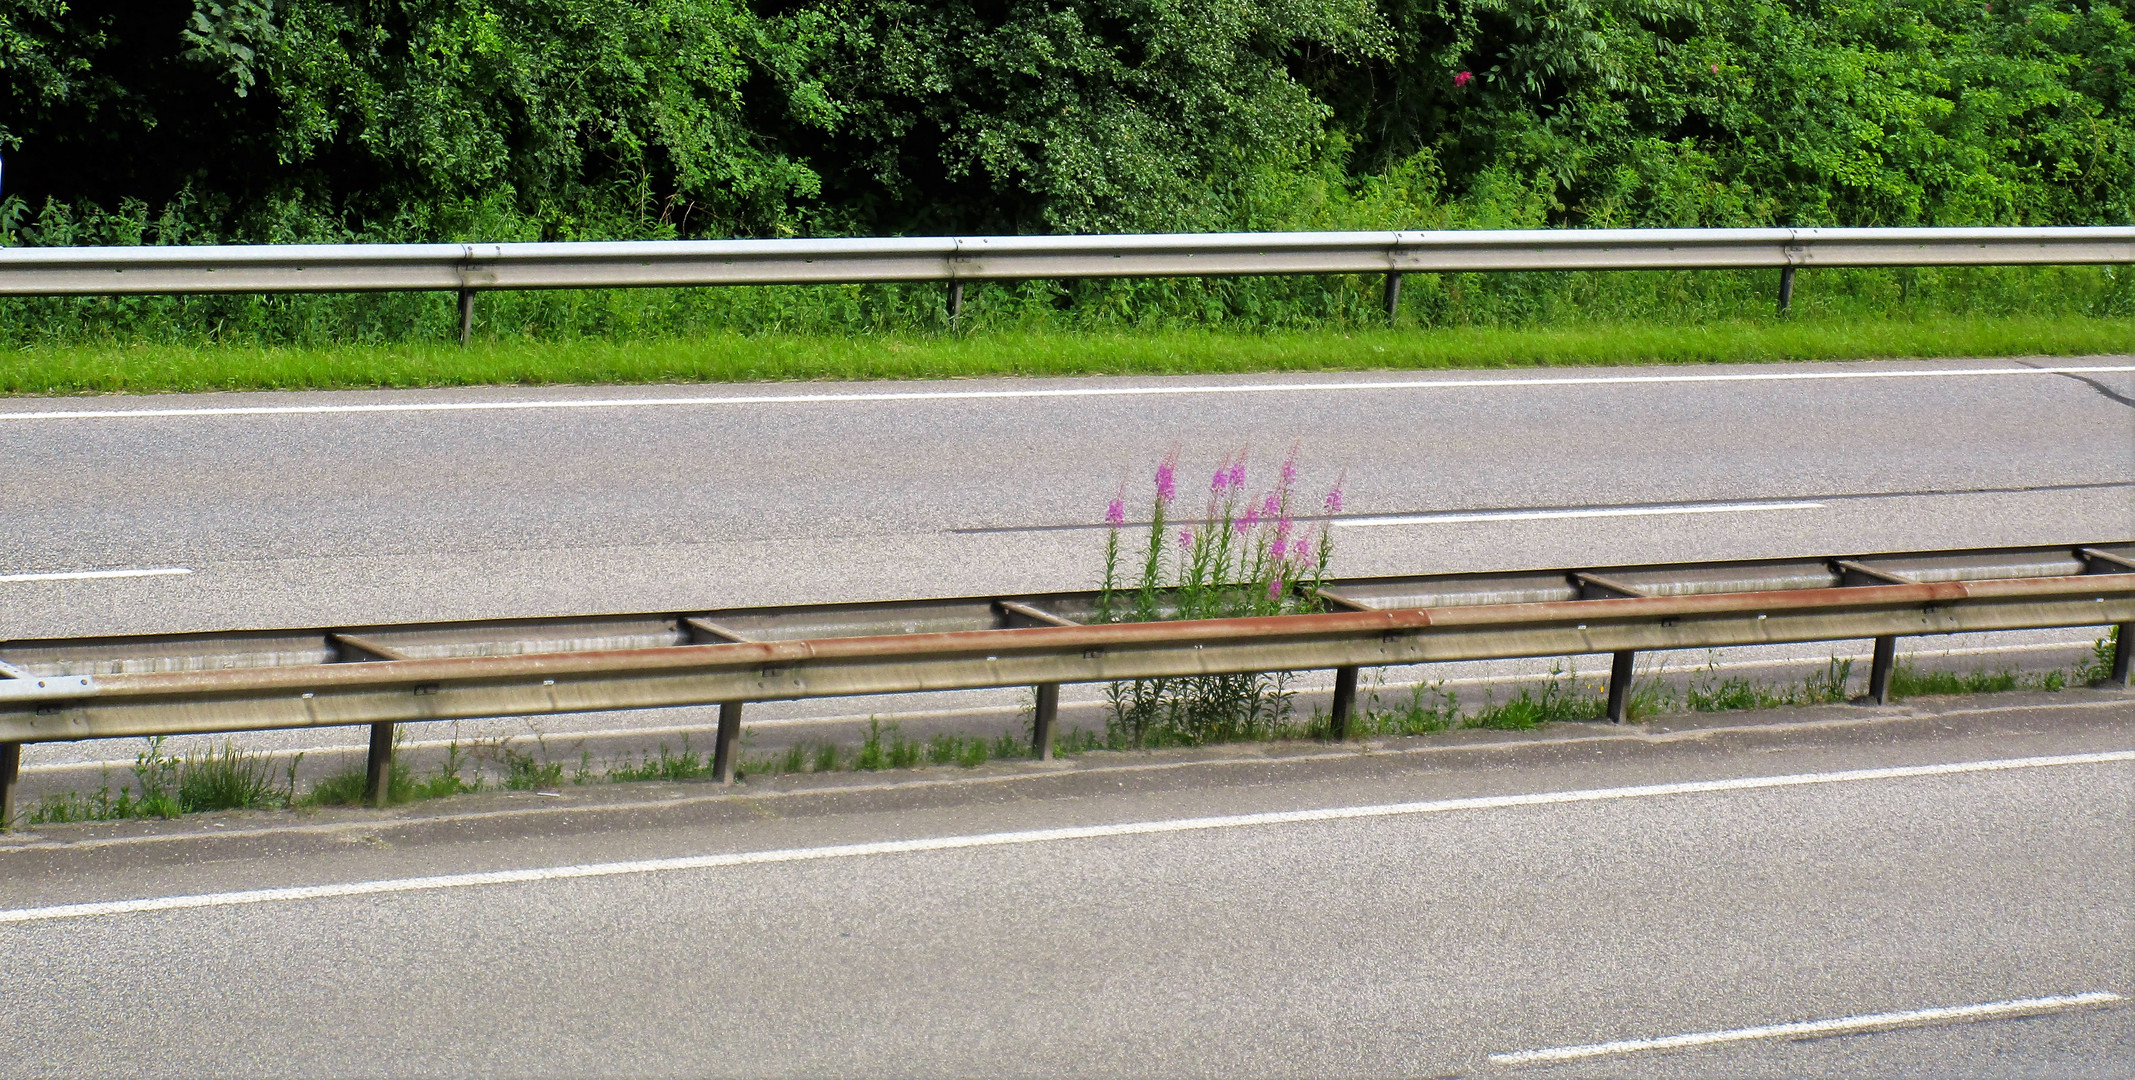 Die Mittelleitplankenarithmetik der Autobahnflora